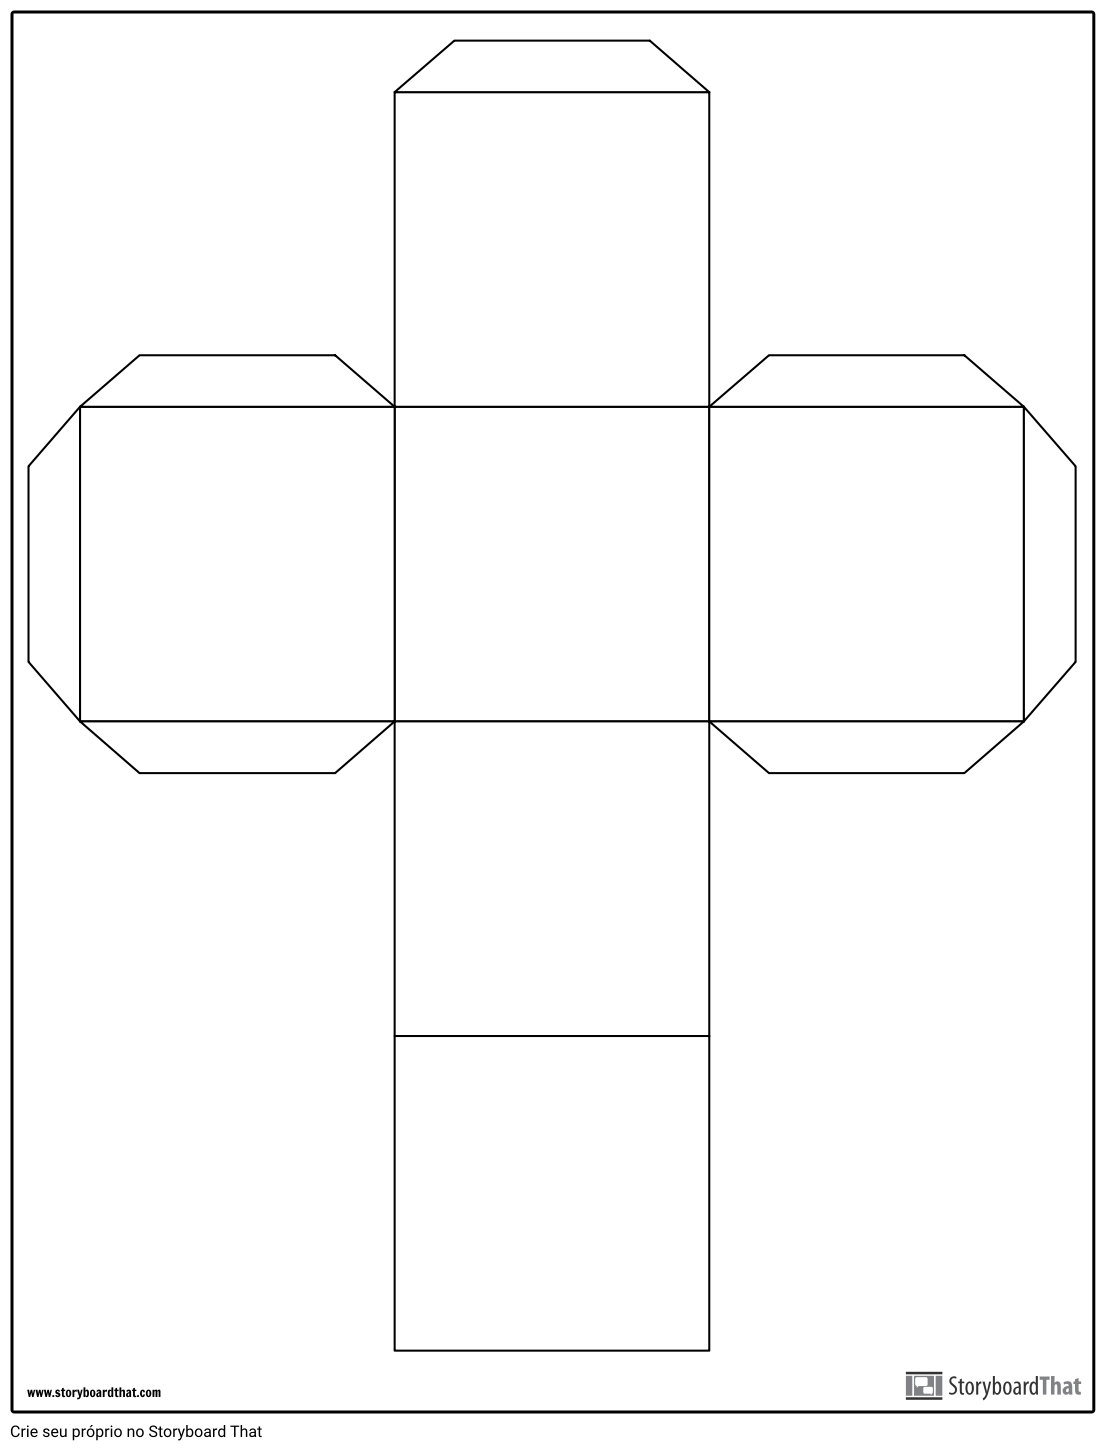 Total 97+ imagen modelo del cubo